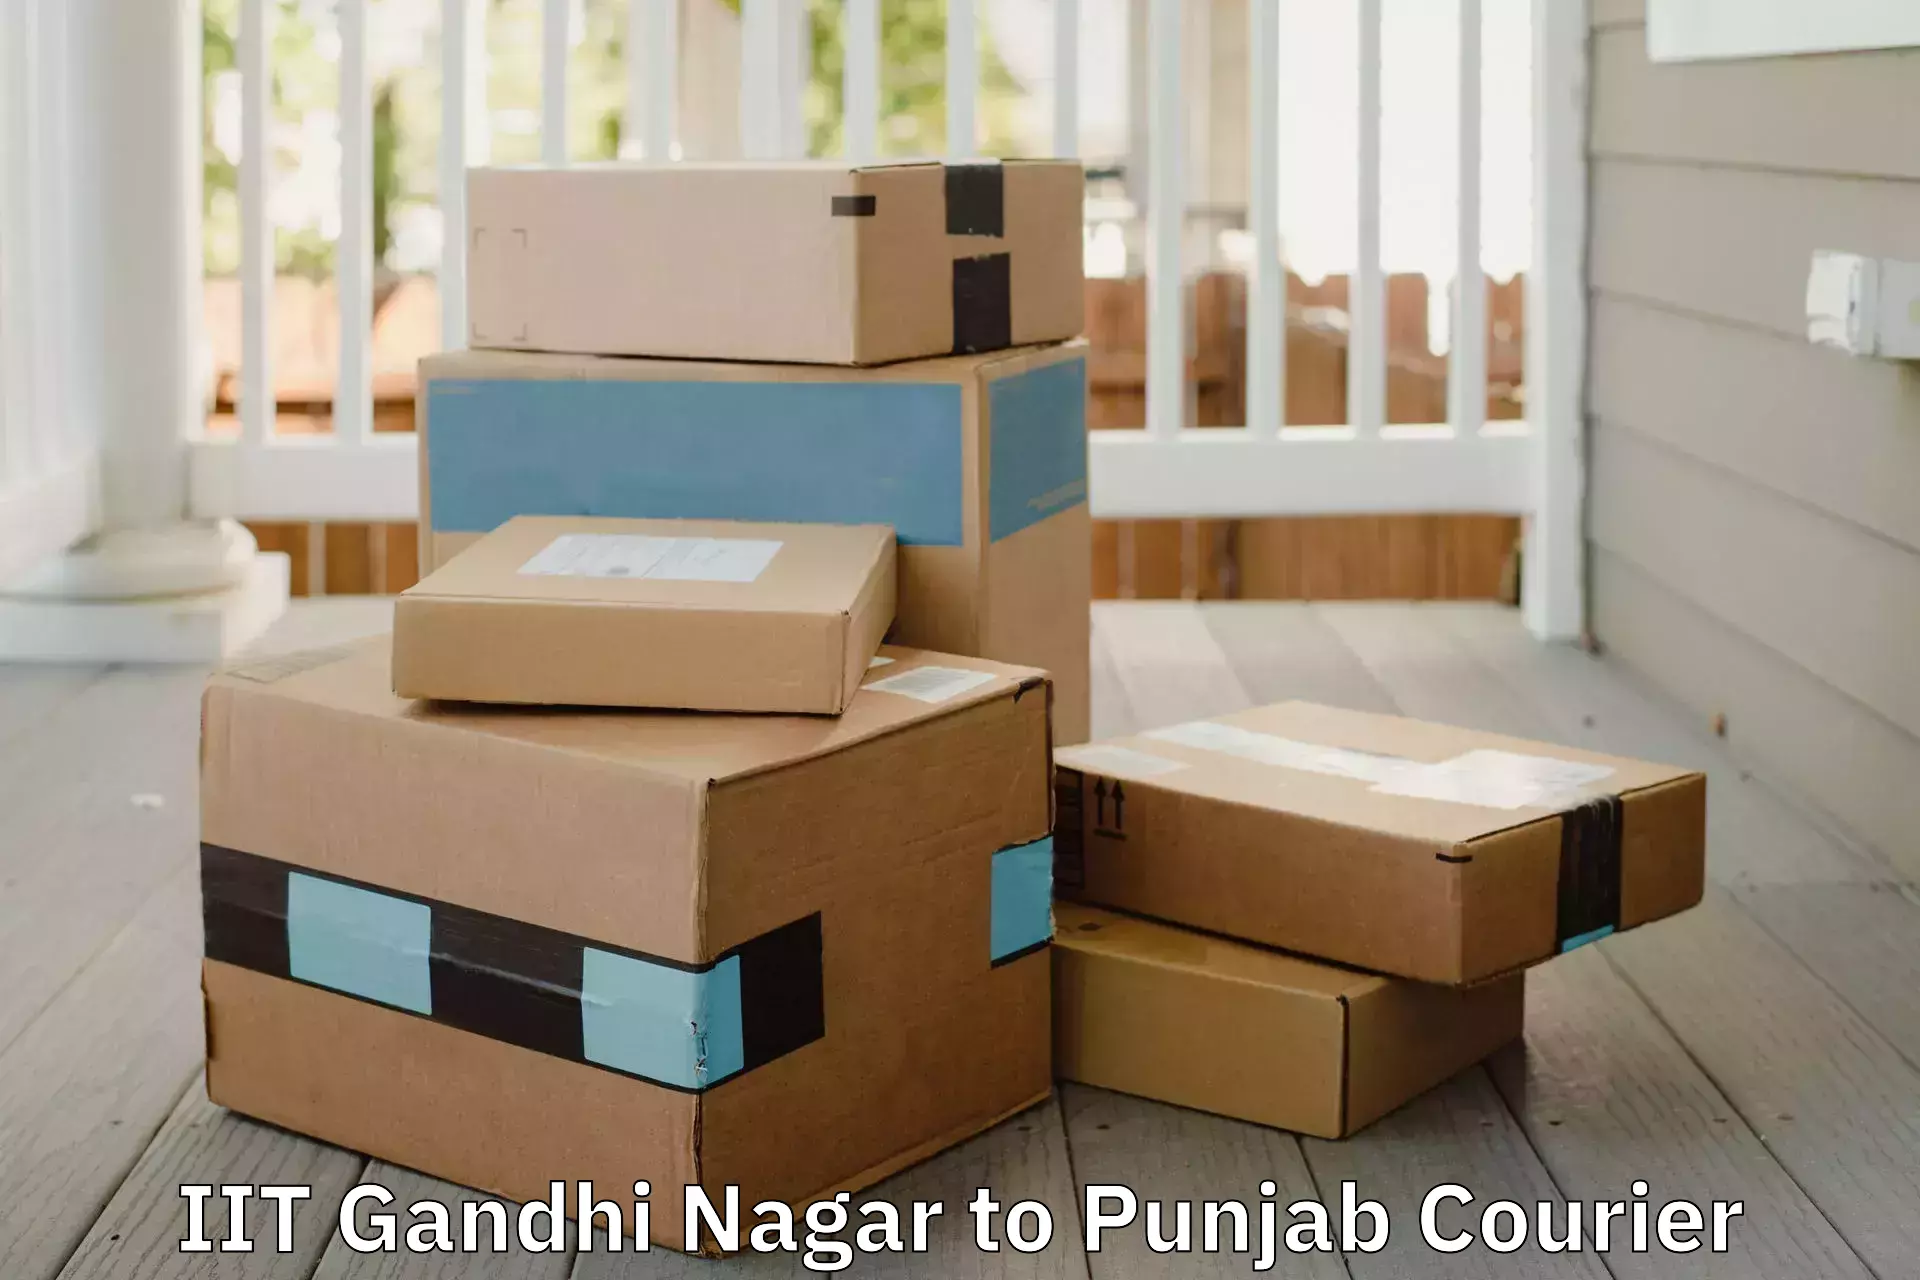 Personalized furniture moving IIT Gandhi Nagar to Dinanagar